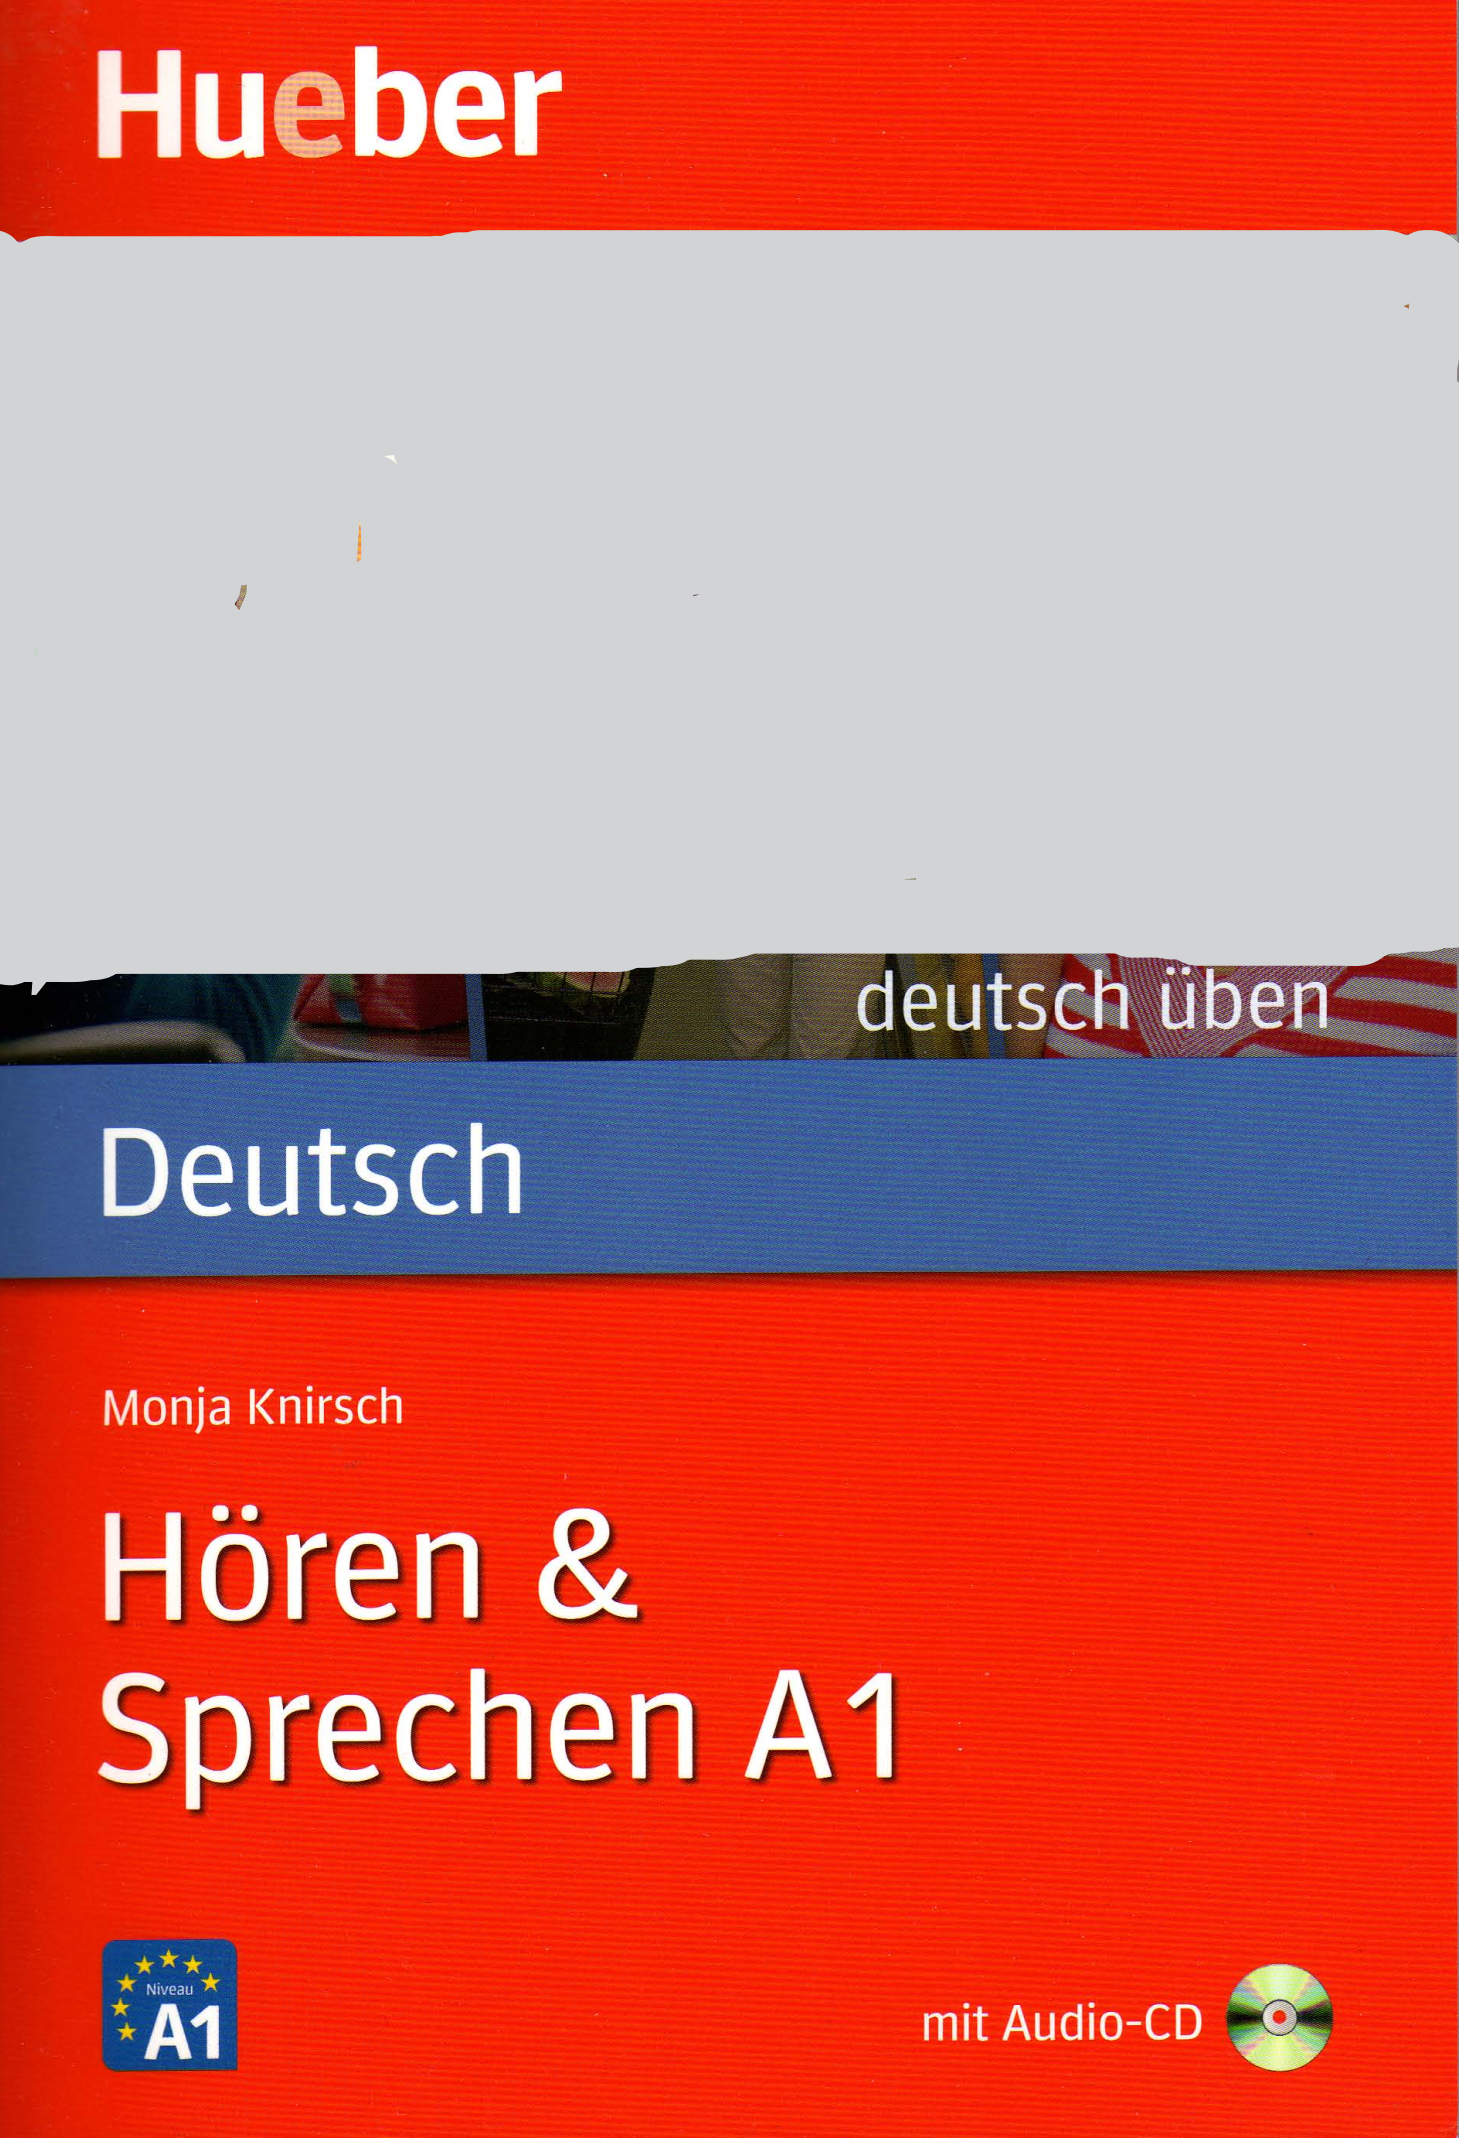 Rich Results on Google's SERP when searching for 'Deutsch üben Hören & Sprechen A1'